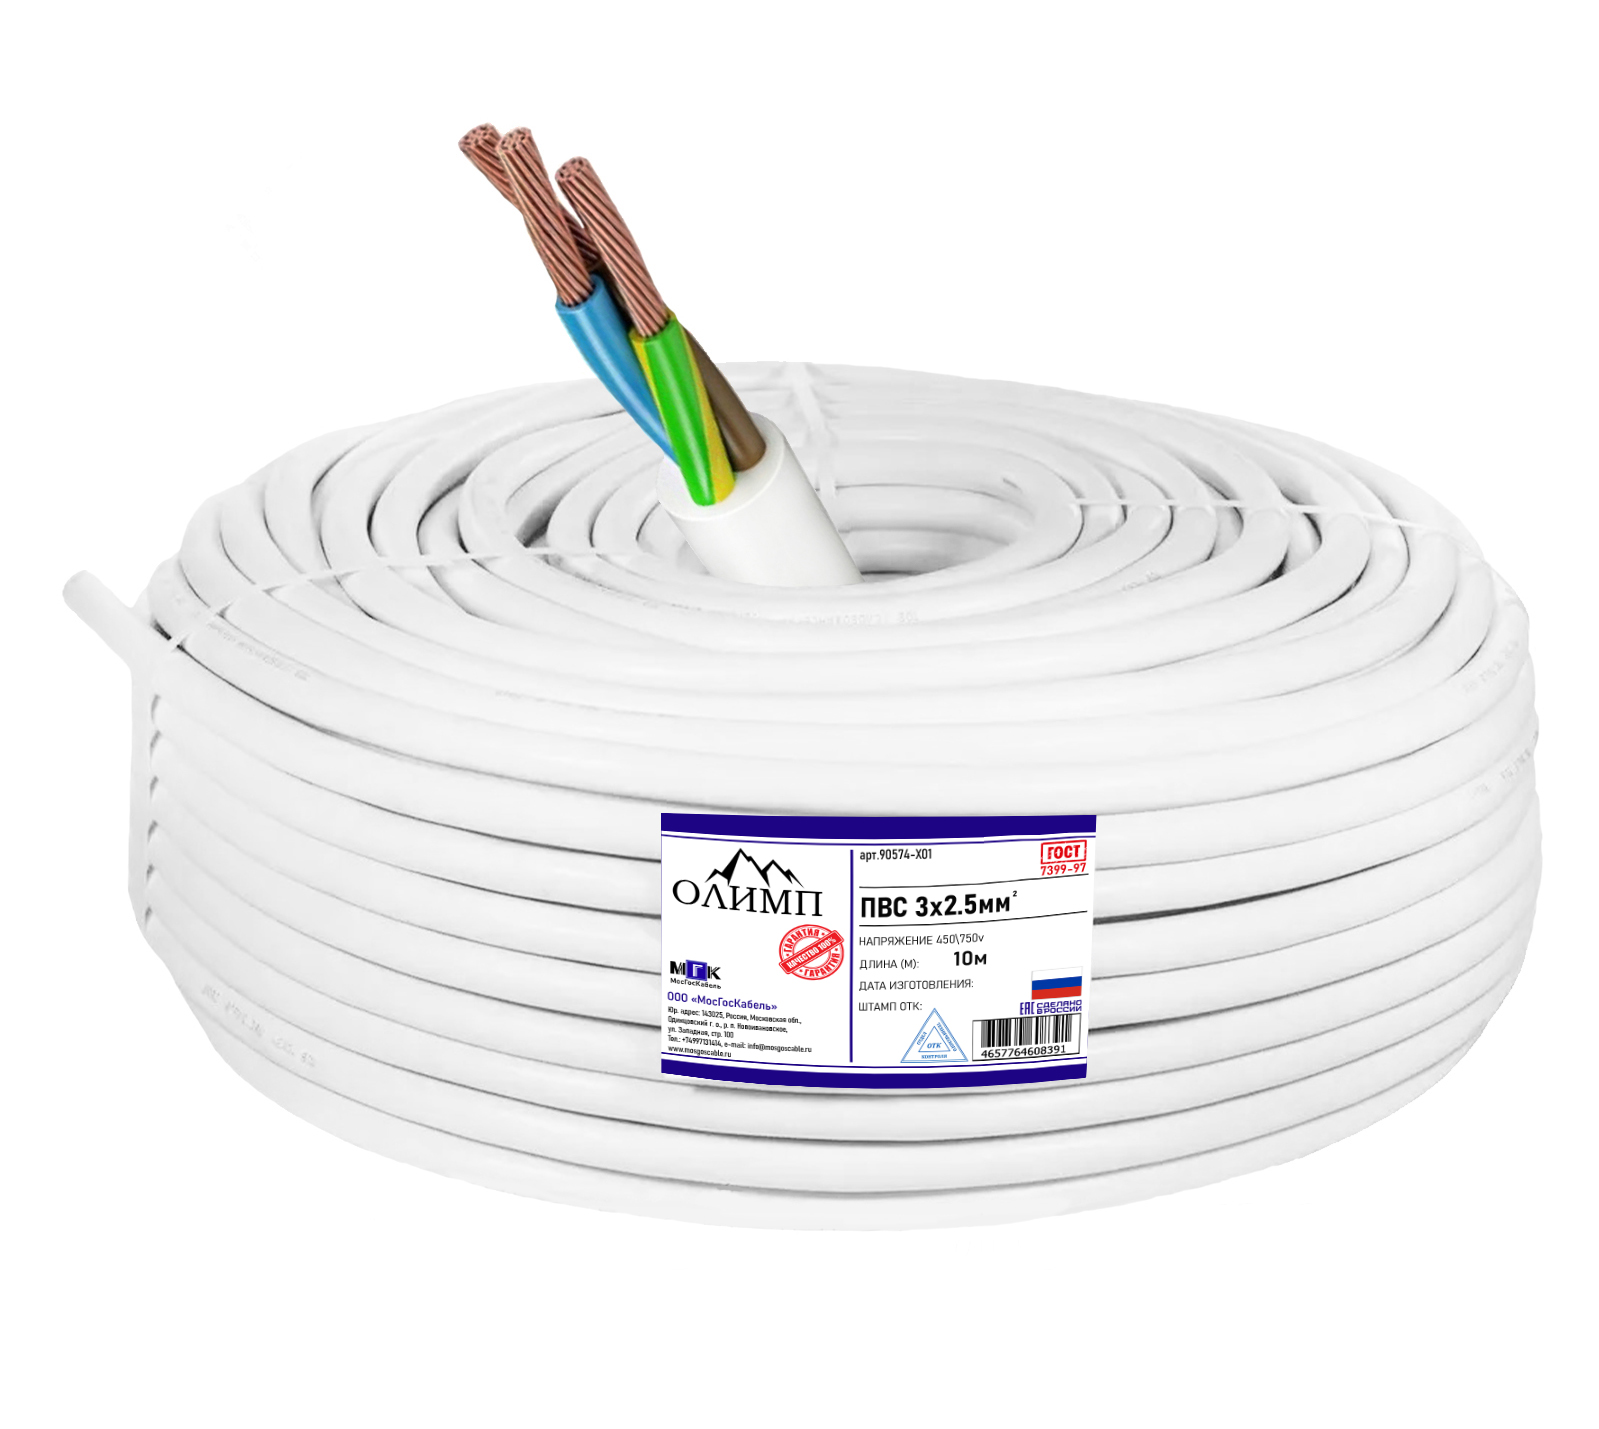 Силовой кабель ПВС ОЛИМП ГОСТ 3x2.5мм 10м 90574-X01